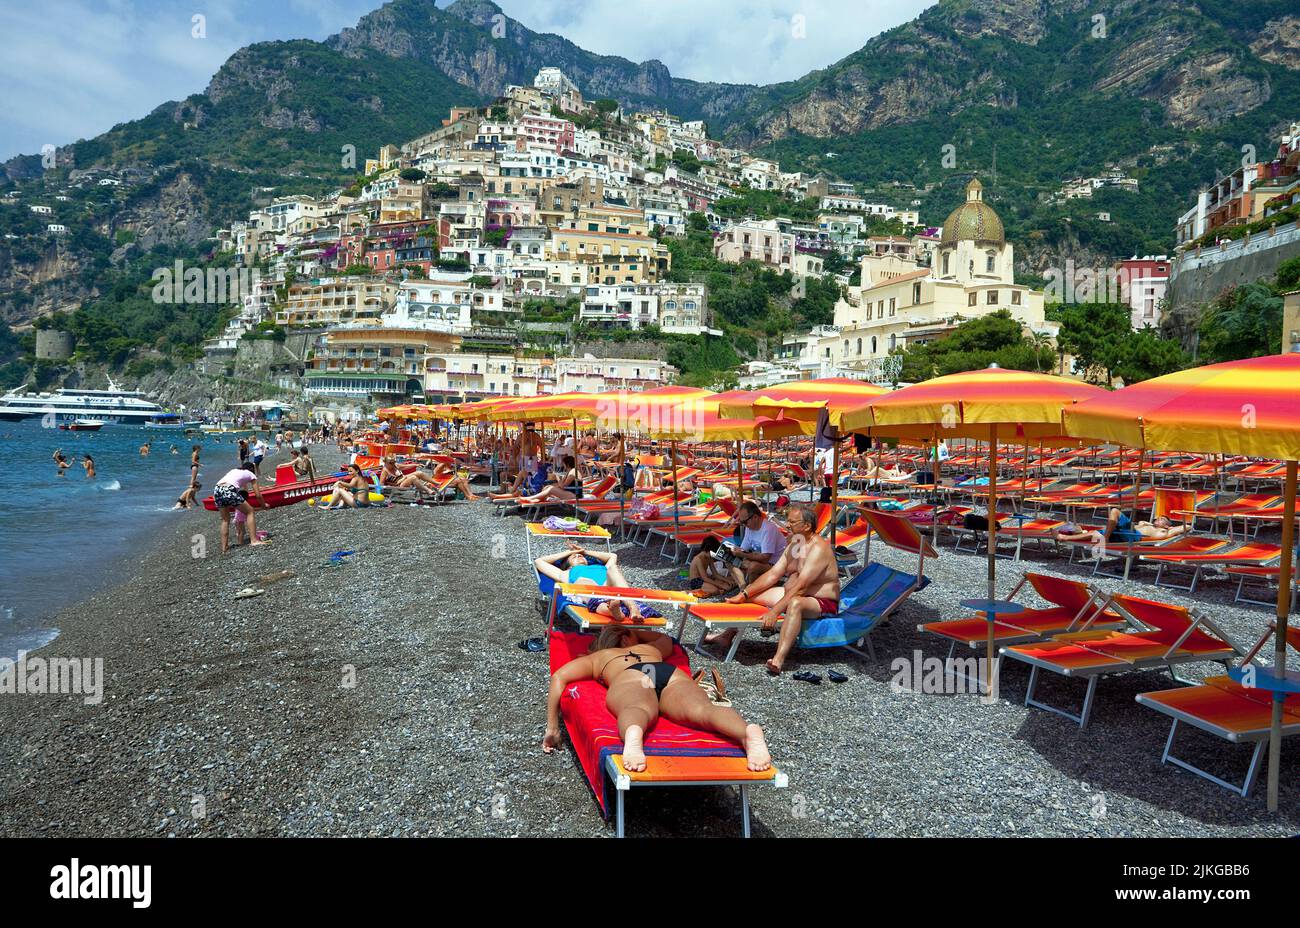 Persone alla spiaggia del villaggio Positano, Costiera Amalfitana, Patrimonio dell'Umanità dell'UNESCO, Campania, Italia, Europa Foto Stock